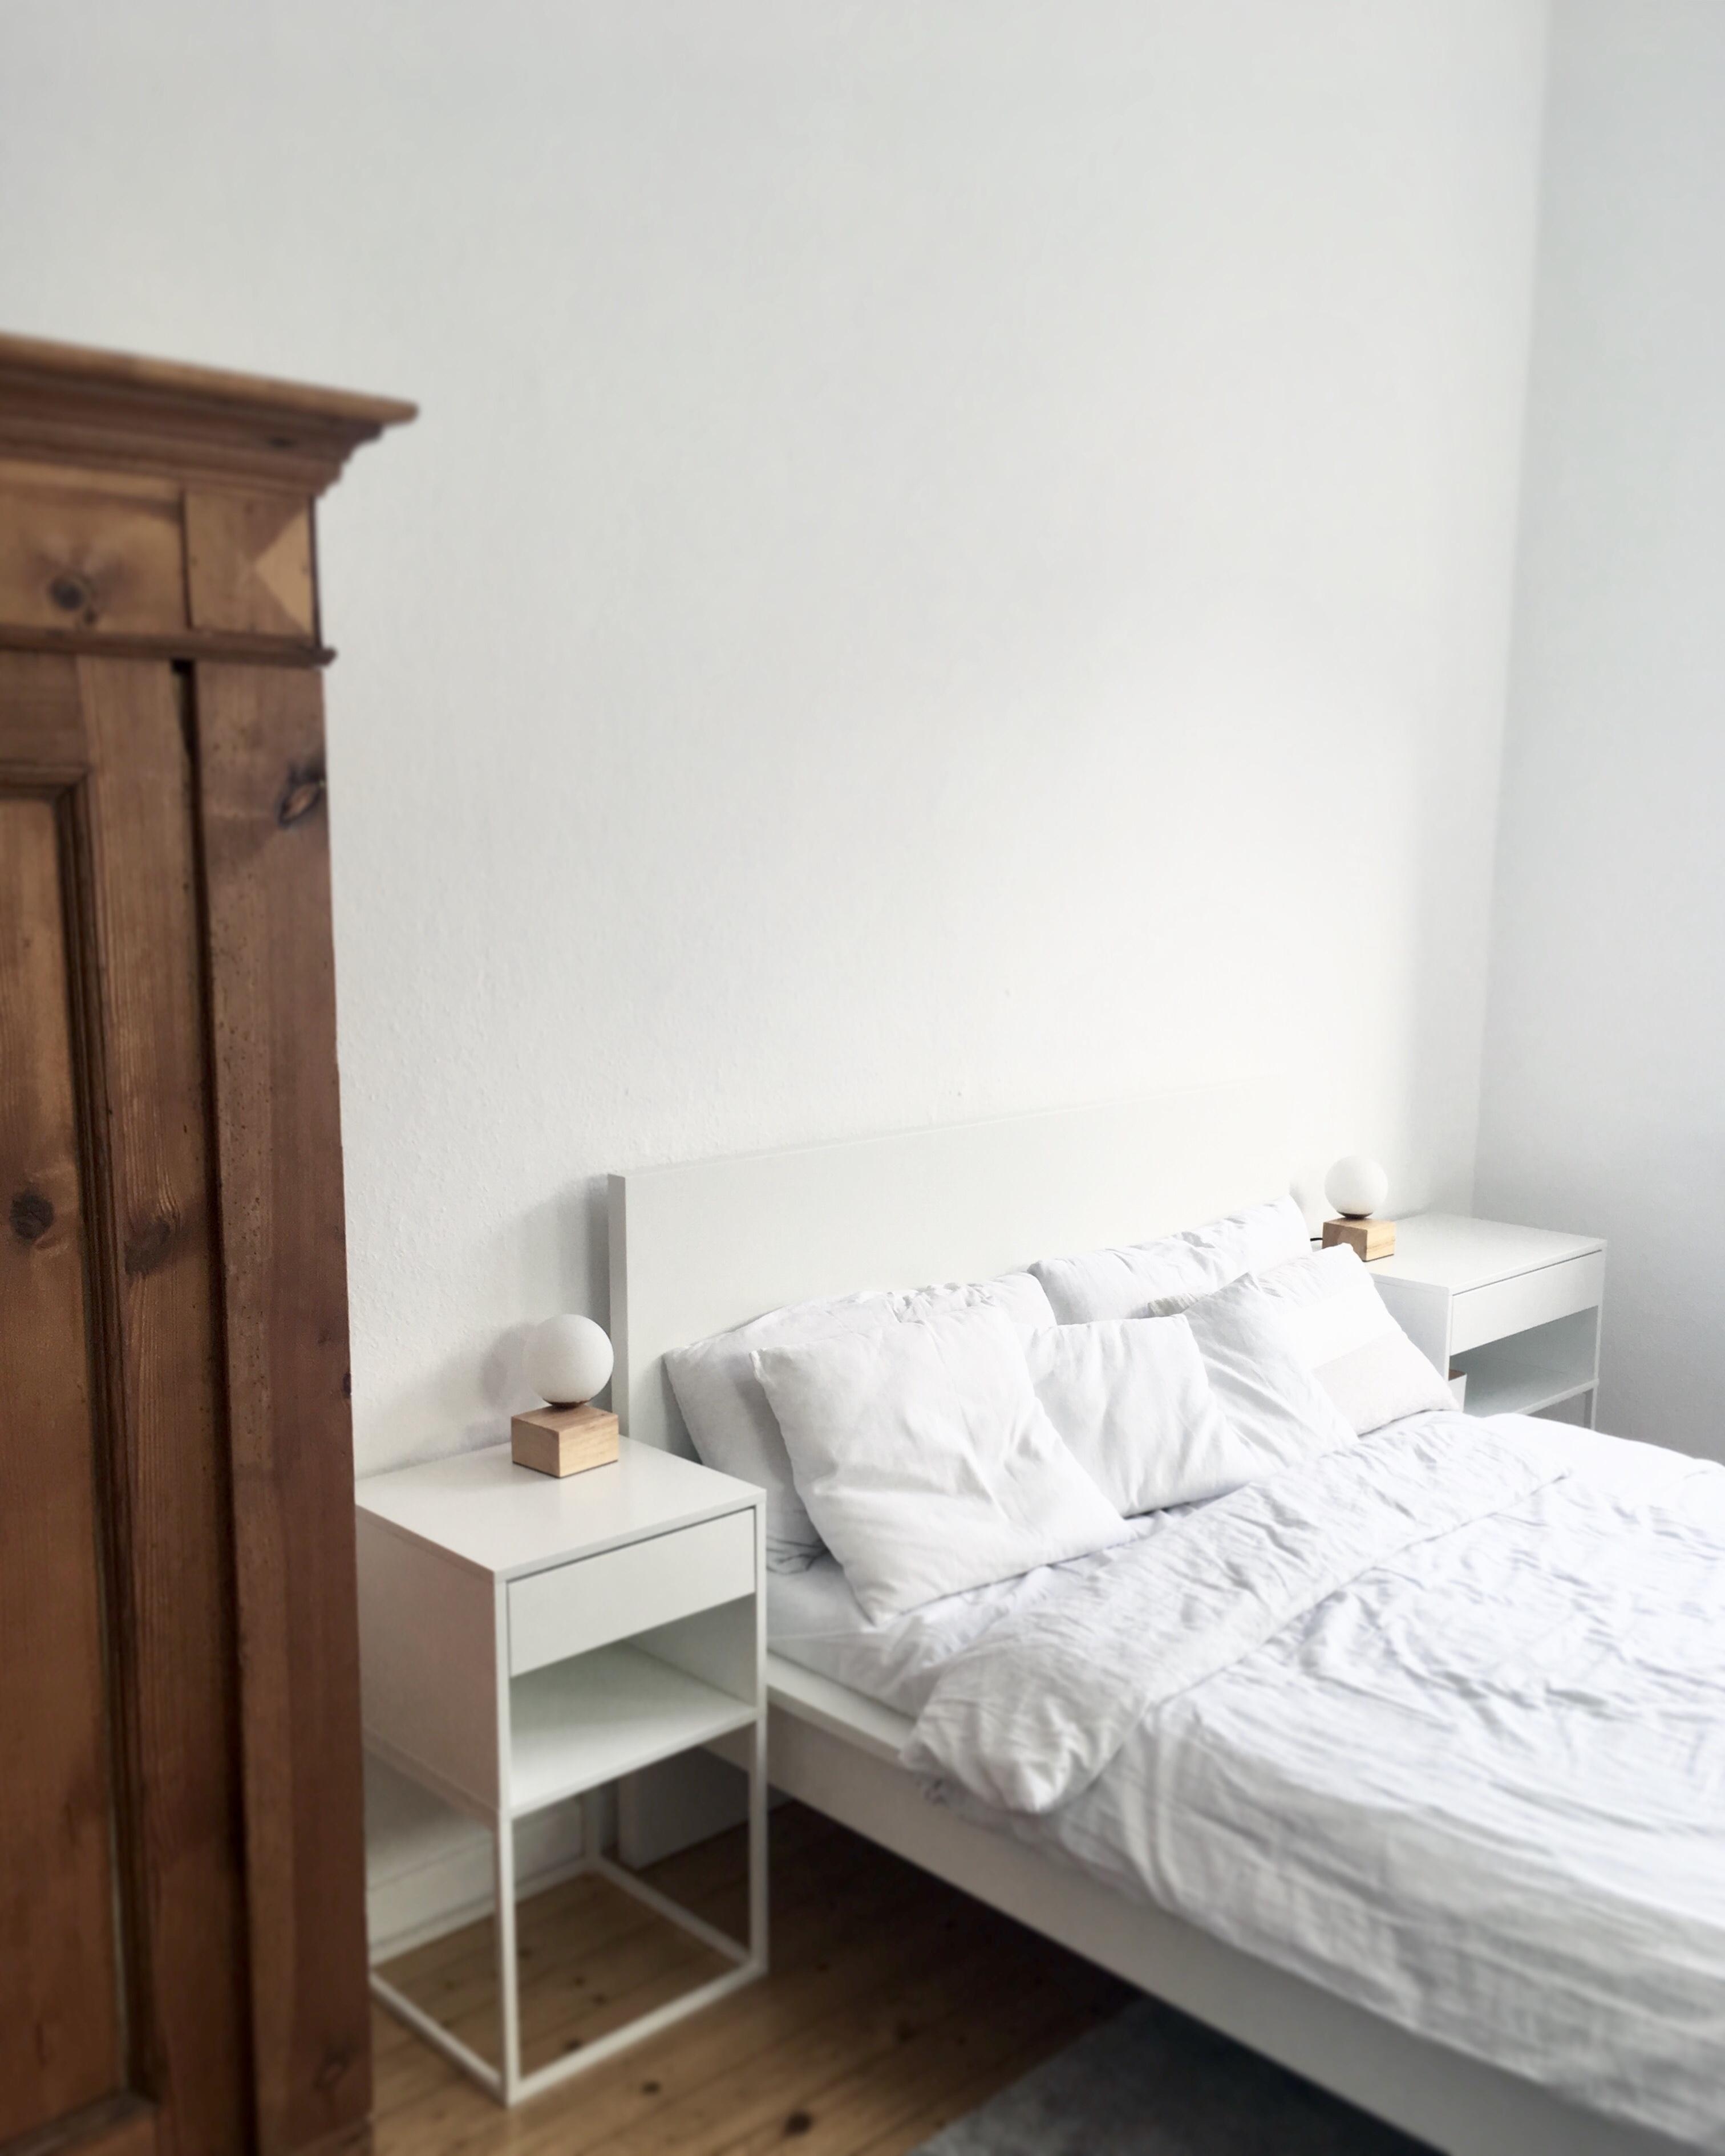 #cozybedroom #hyggelig #needsomesleep #hannover